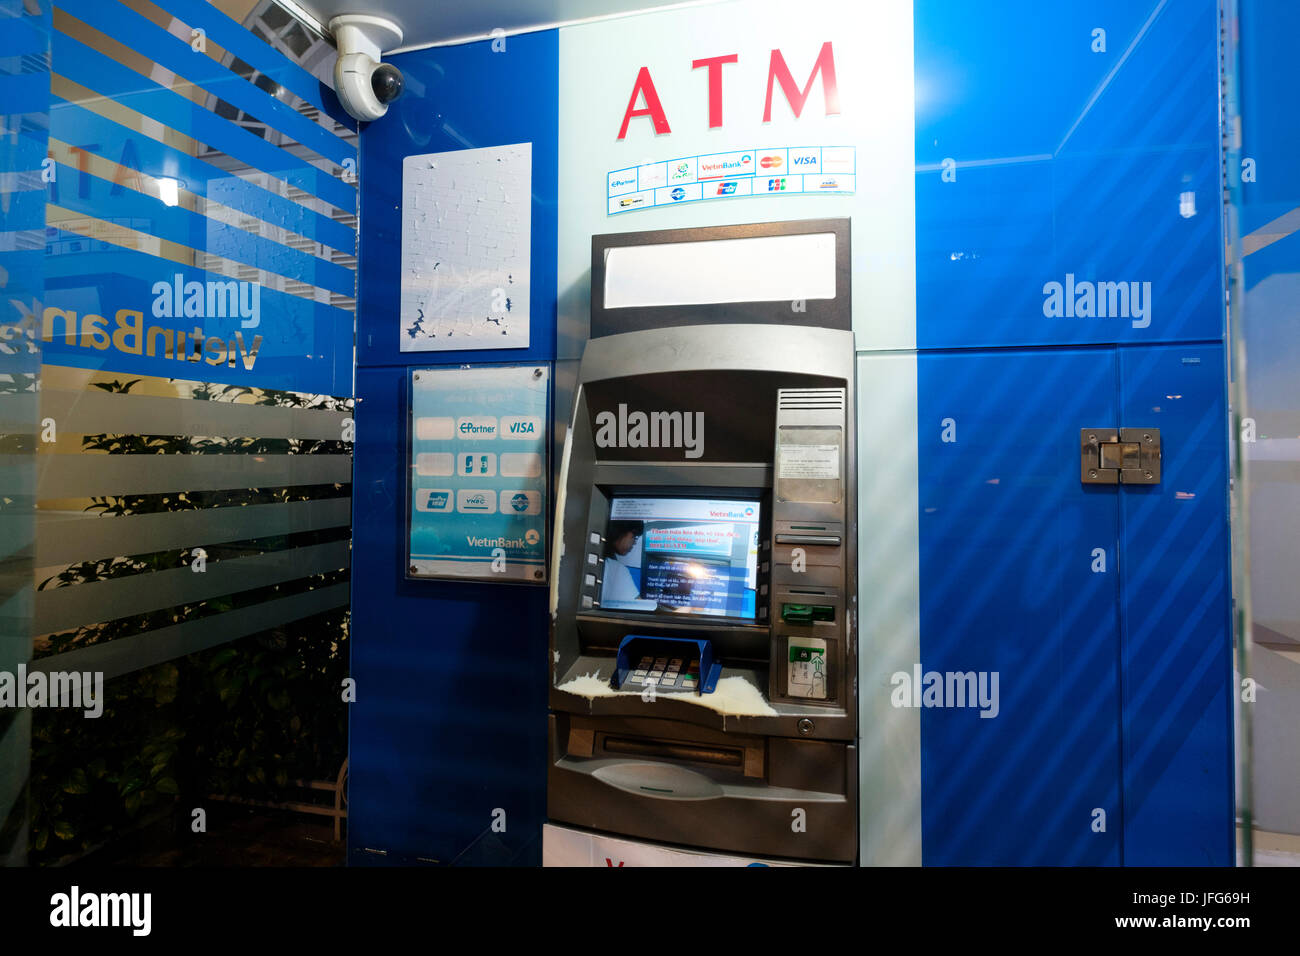 ATM in Vietnam Foto Stock